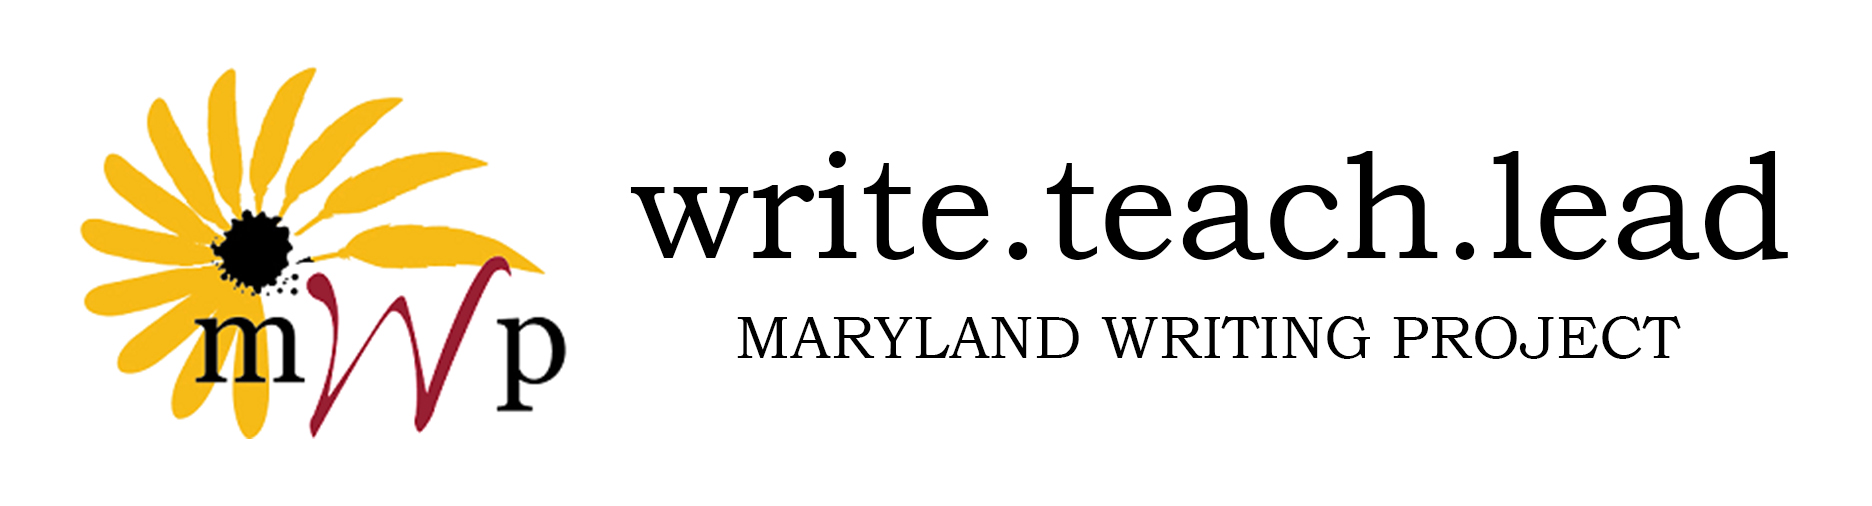 write.teach.lead